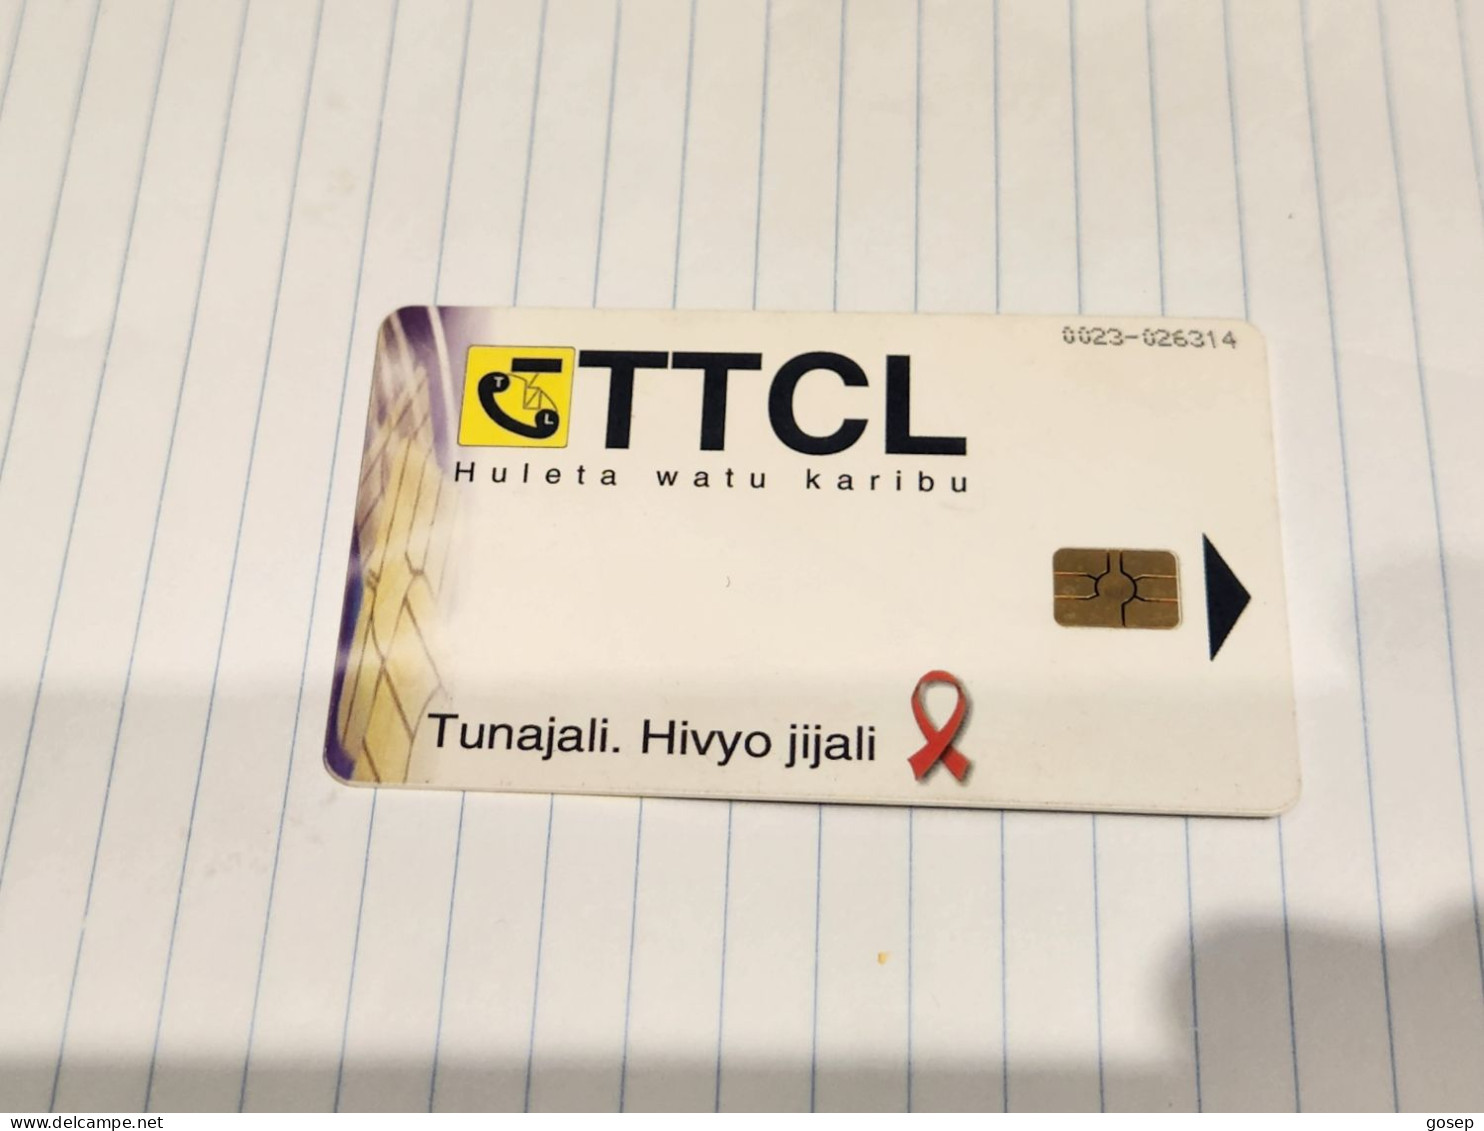 Tanzania-(TZ-TTC-0018B1)-sungura Mjanja-(20)-(Tshs-1.000)-(0023-026314)-used Card+1card Prepiad/gift Free - Tanzanie